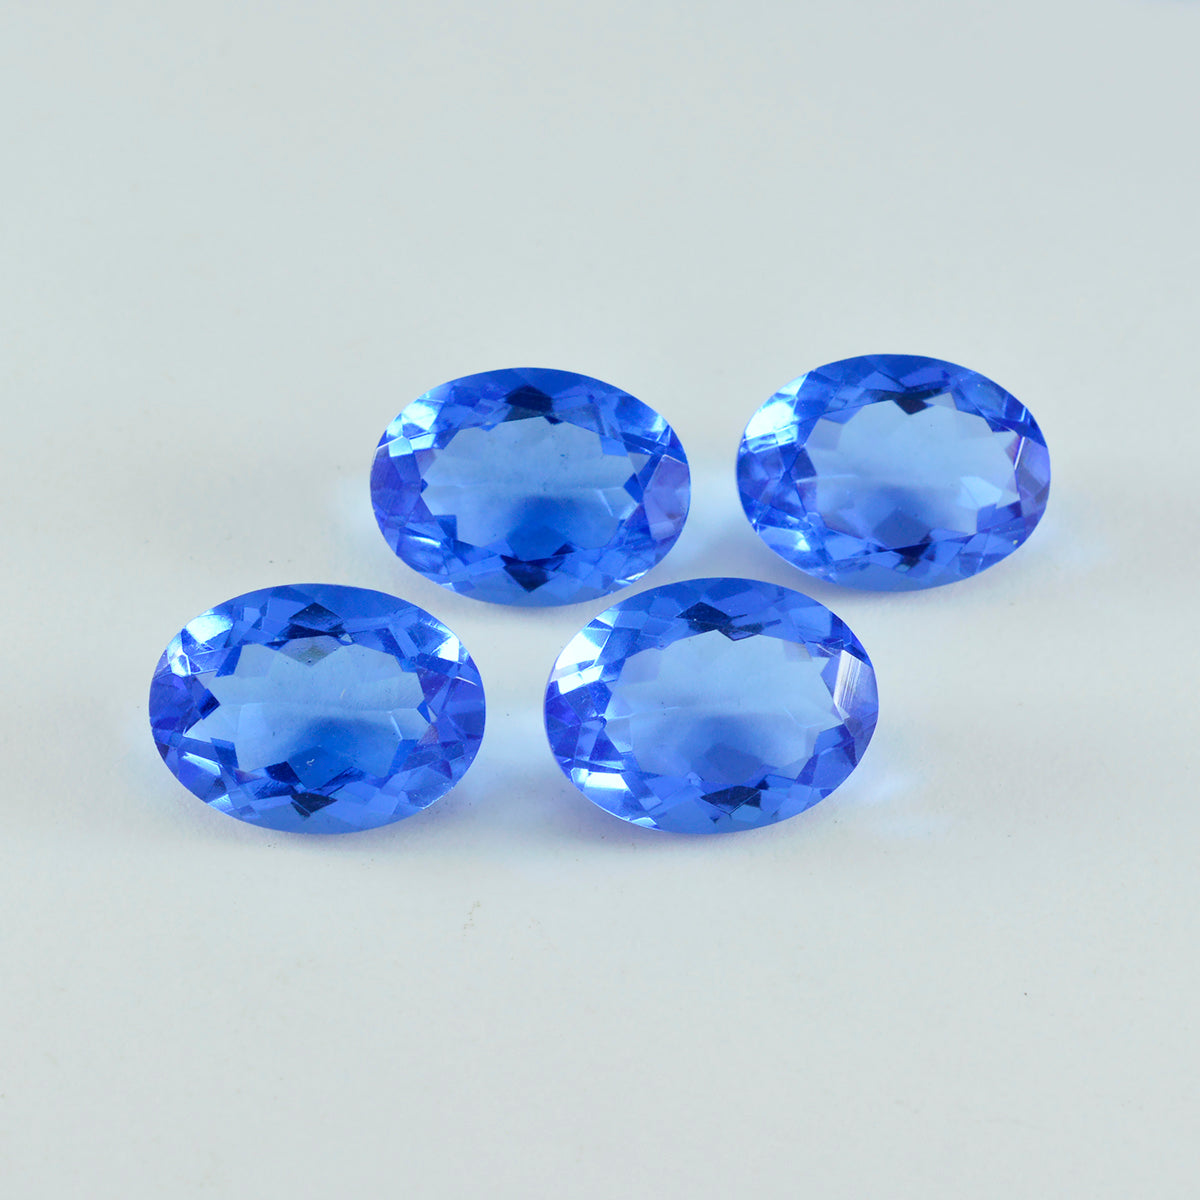 Riyogems 1PC Blauwe Saffier CZ Facet 10x14 mm Ovale Vorm aantrekkelijke Kwaliteit Losse Edelstenen